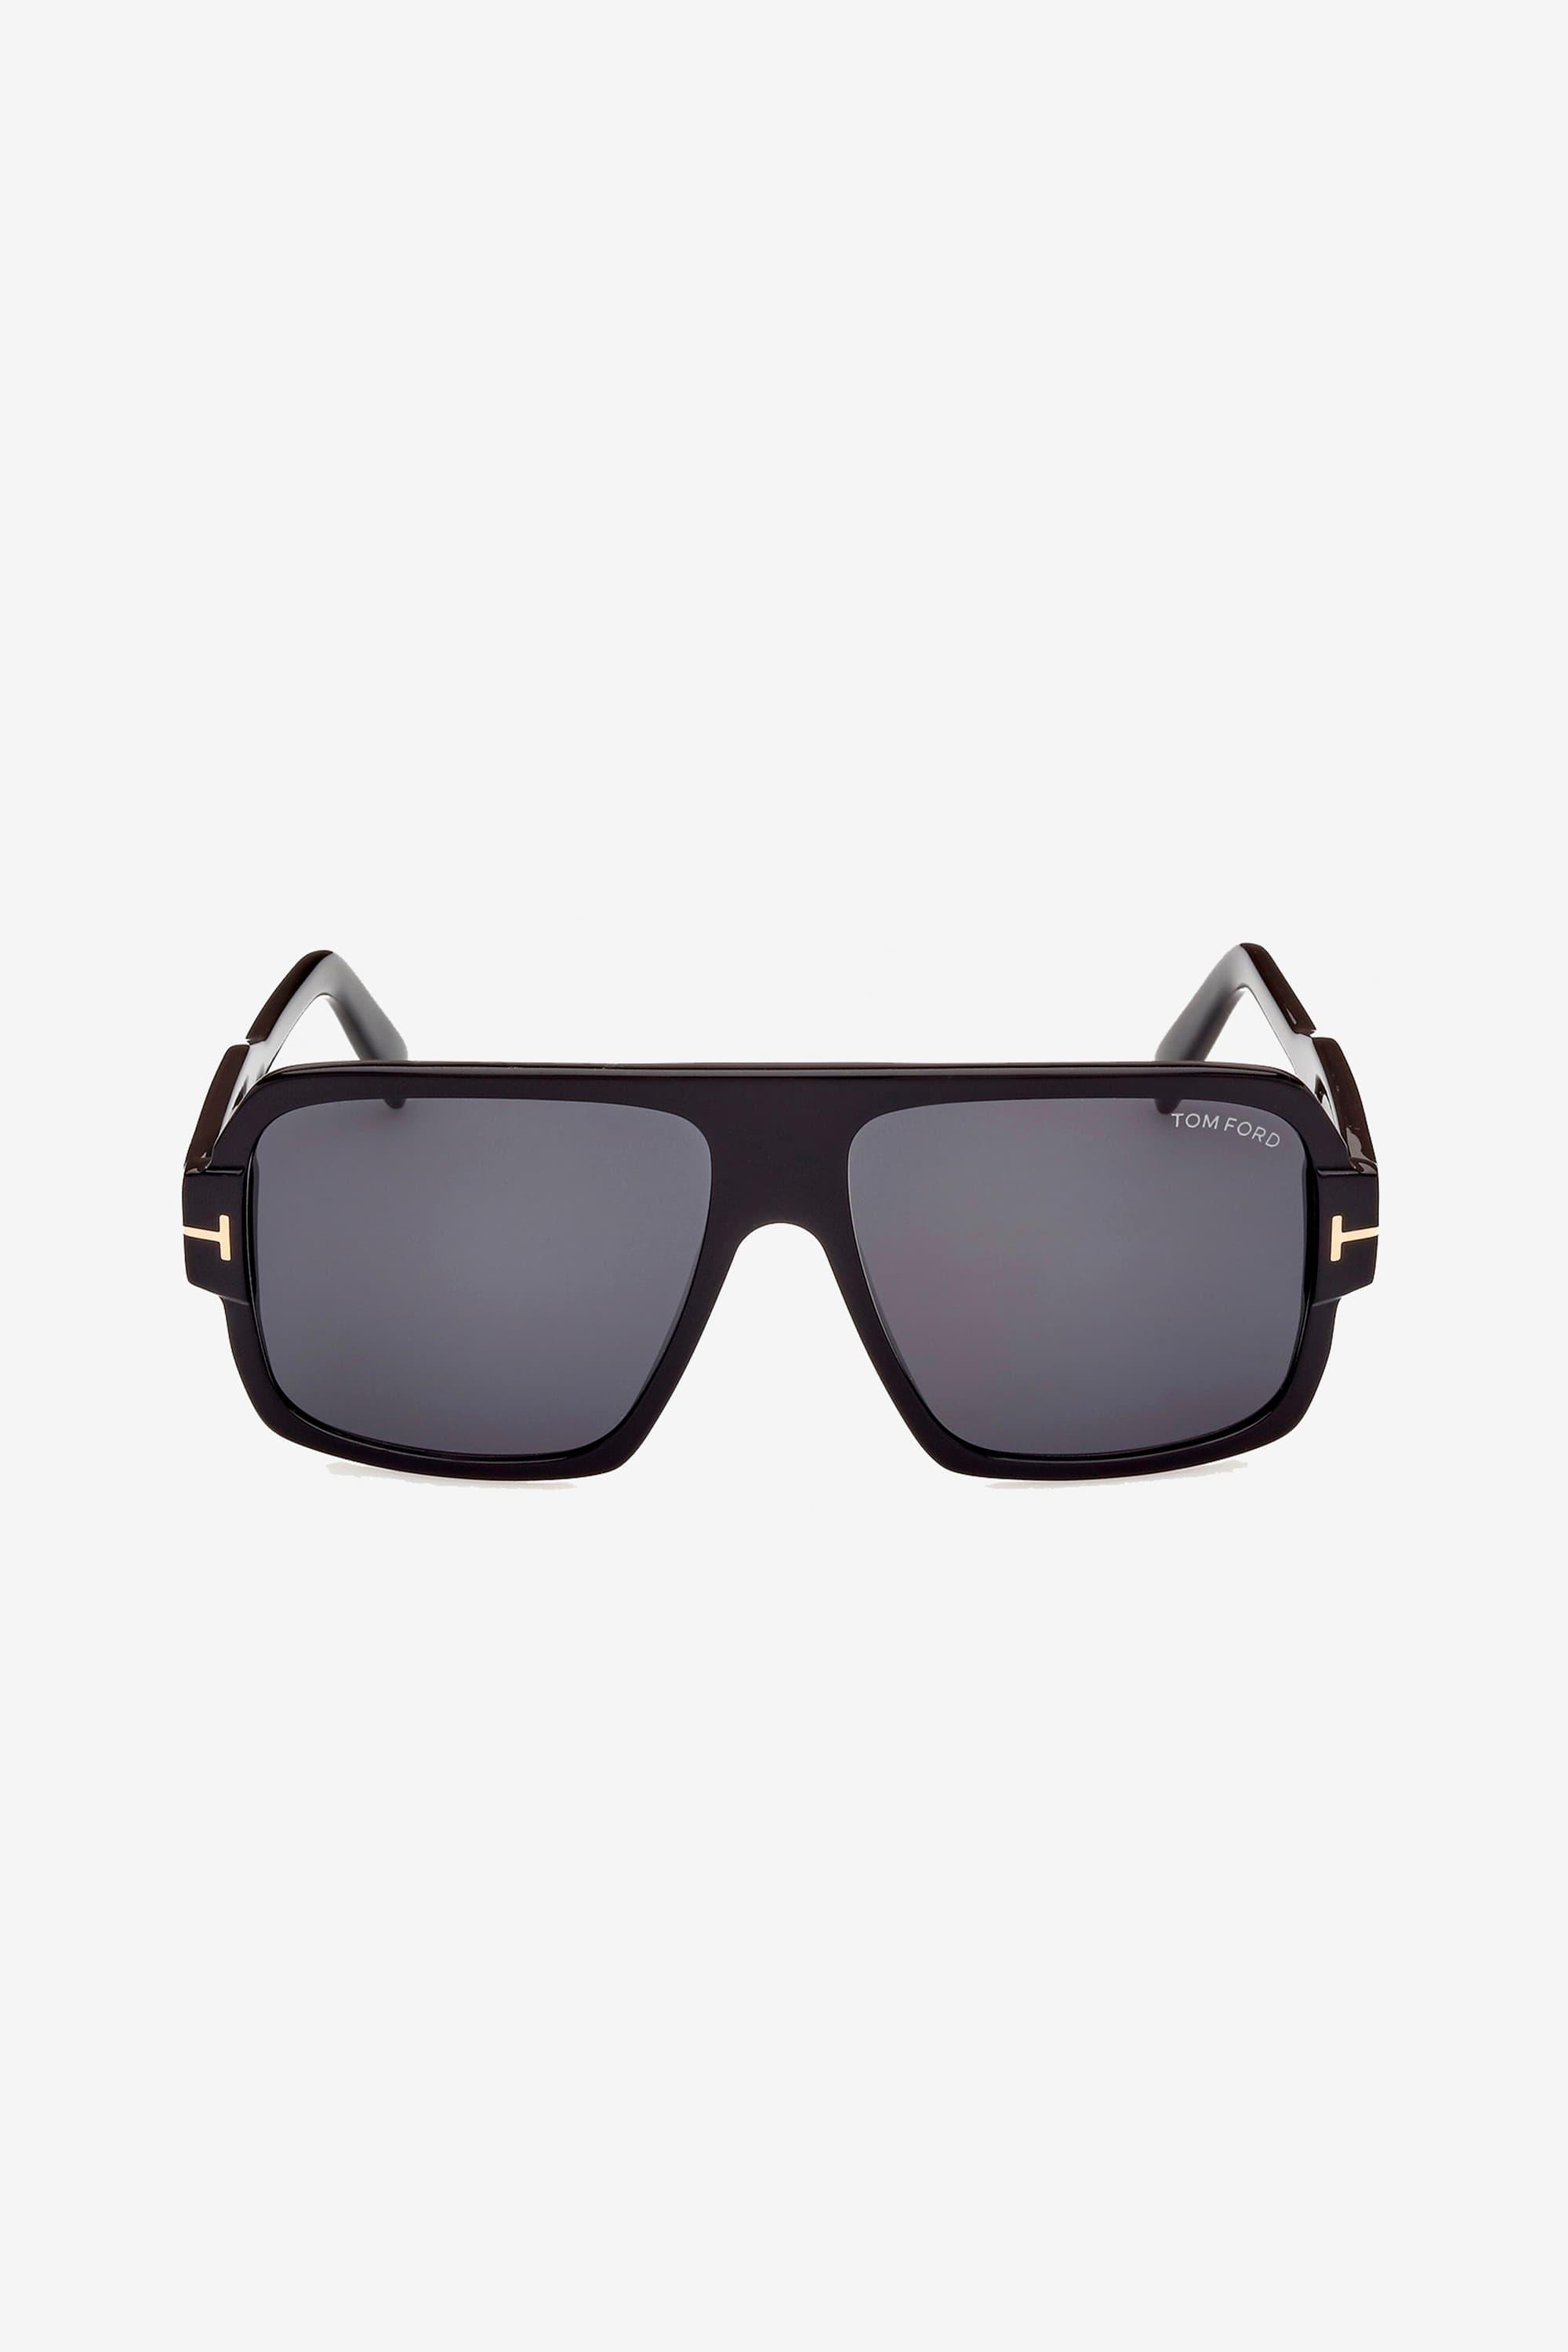 Tom Ford Rectangular Black Sunglasses for Men | Lyst